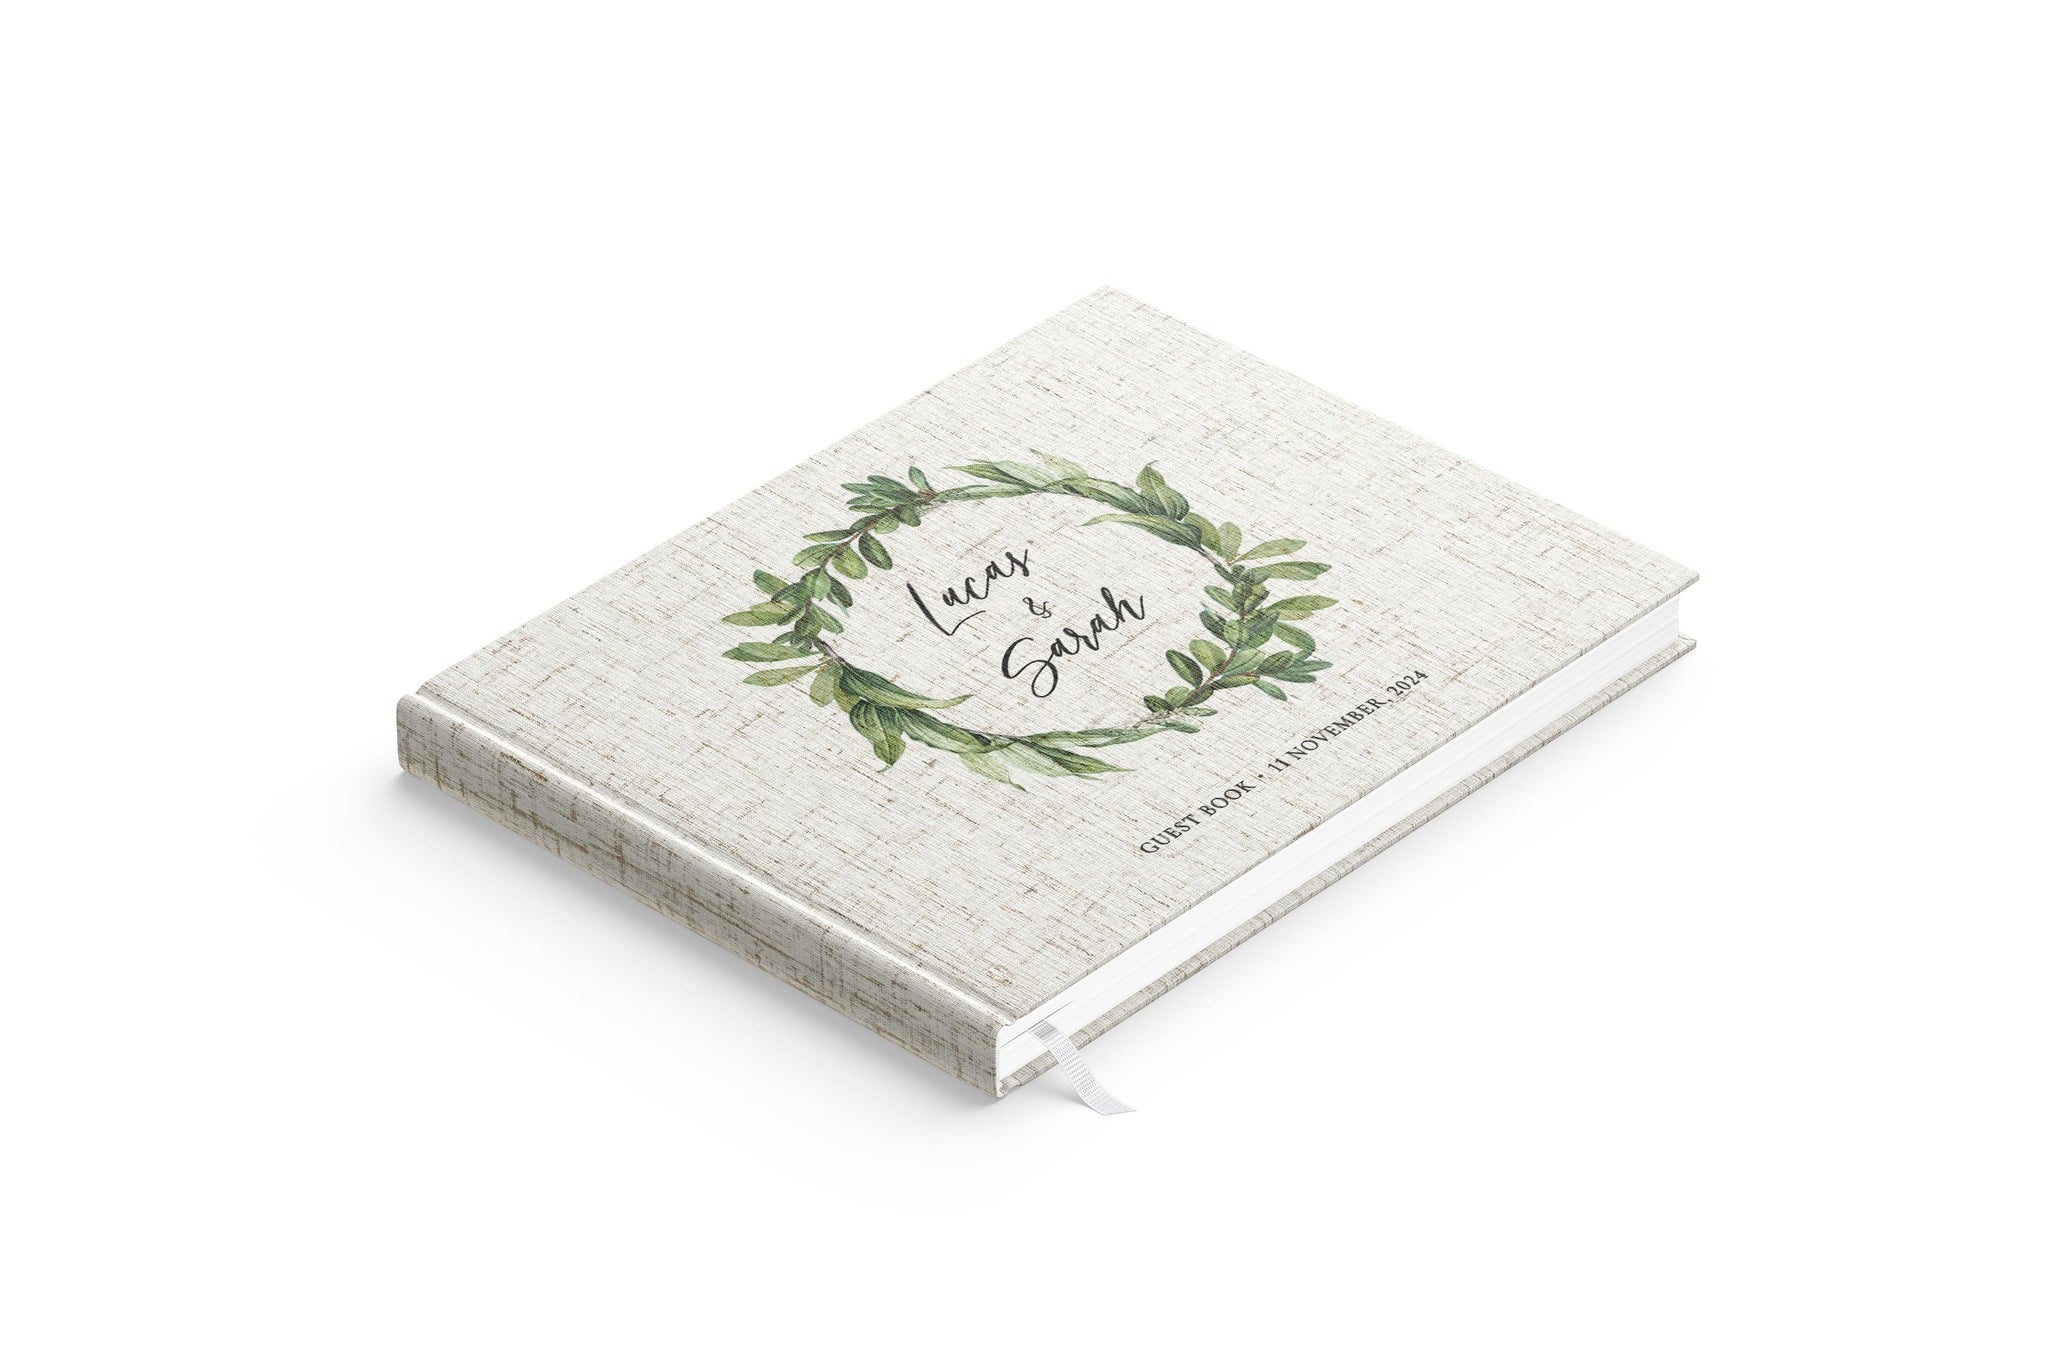 Foliage Wreath | Wedding Guest Book